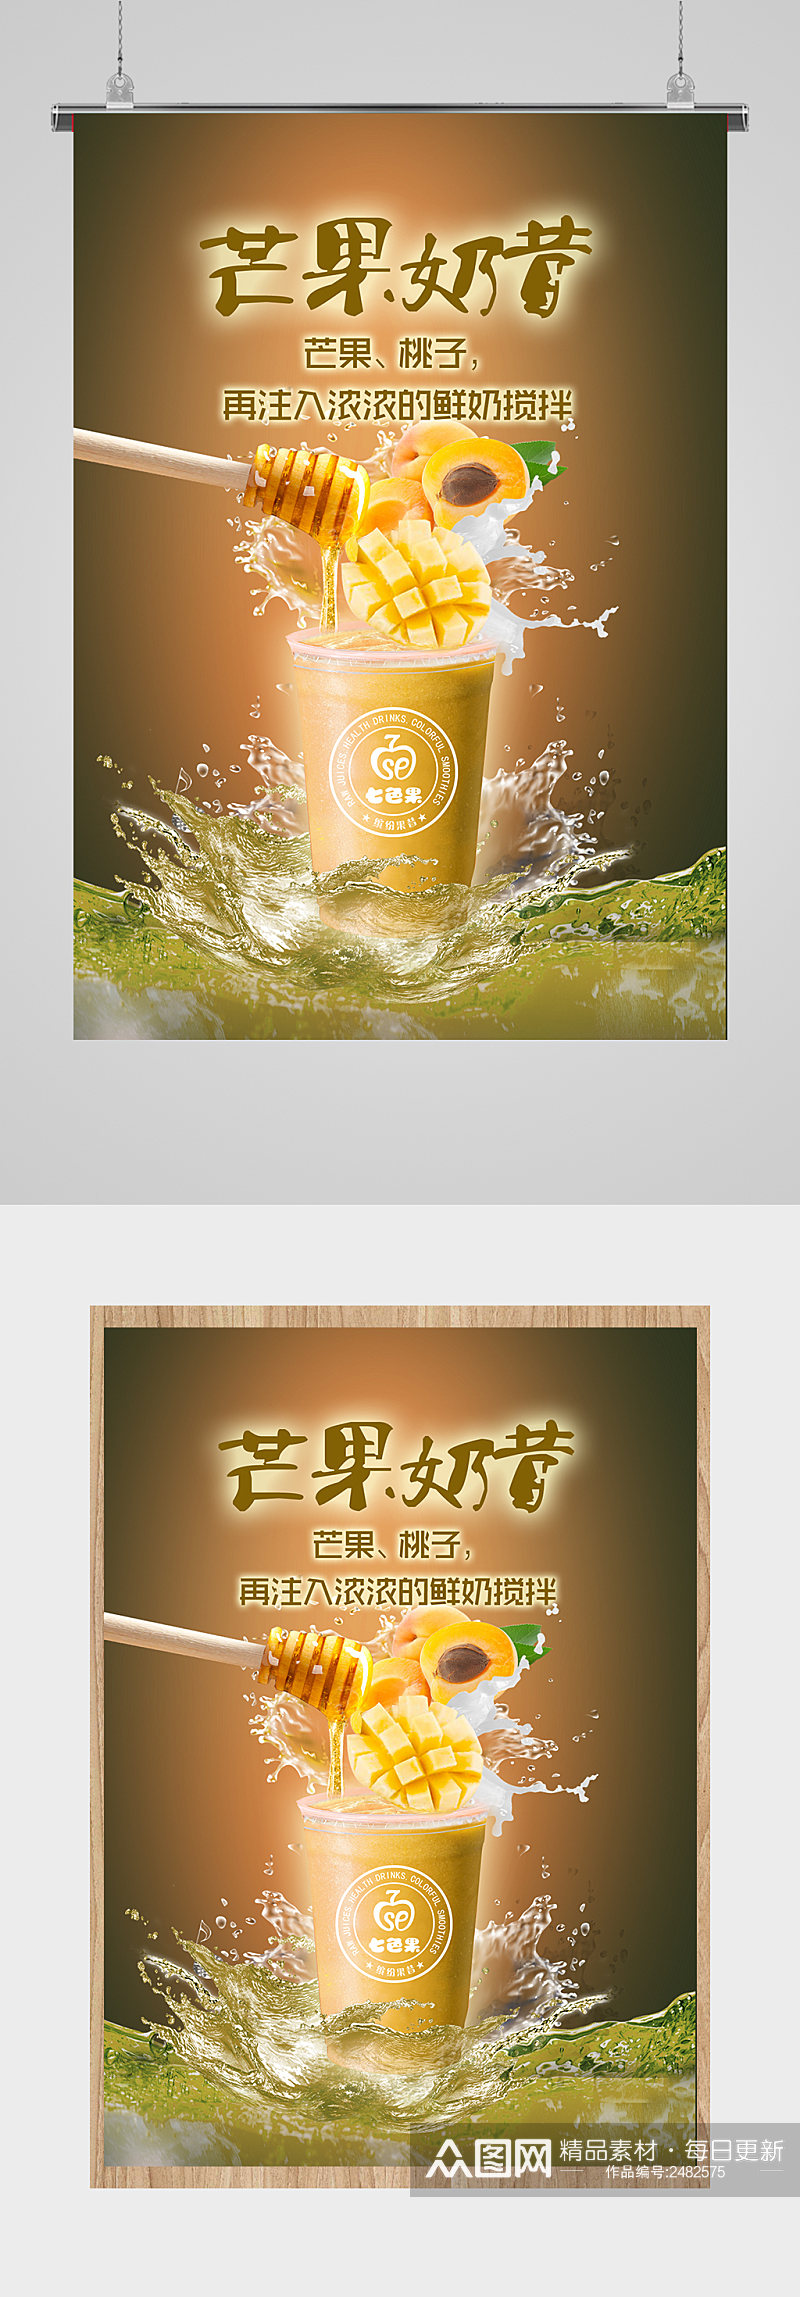 饮品宣传海报展板素材